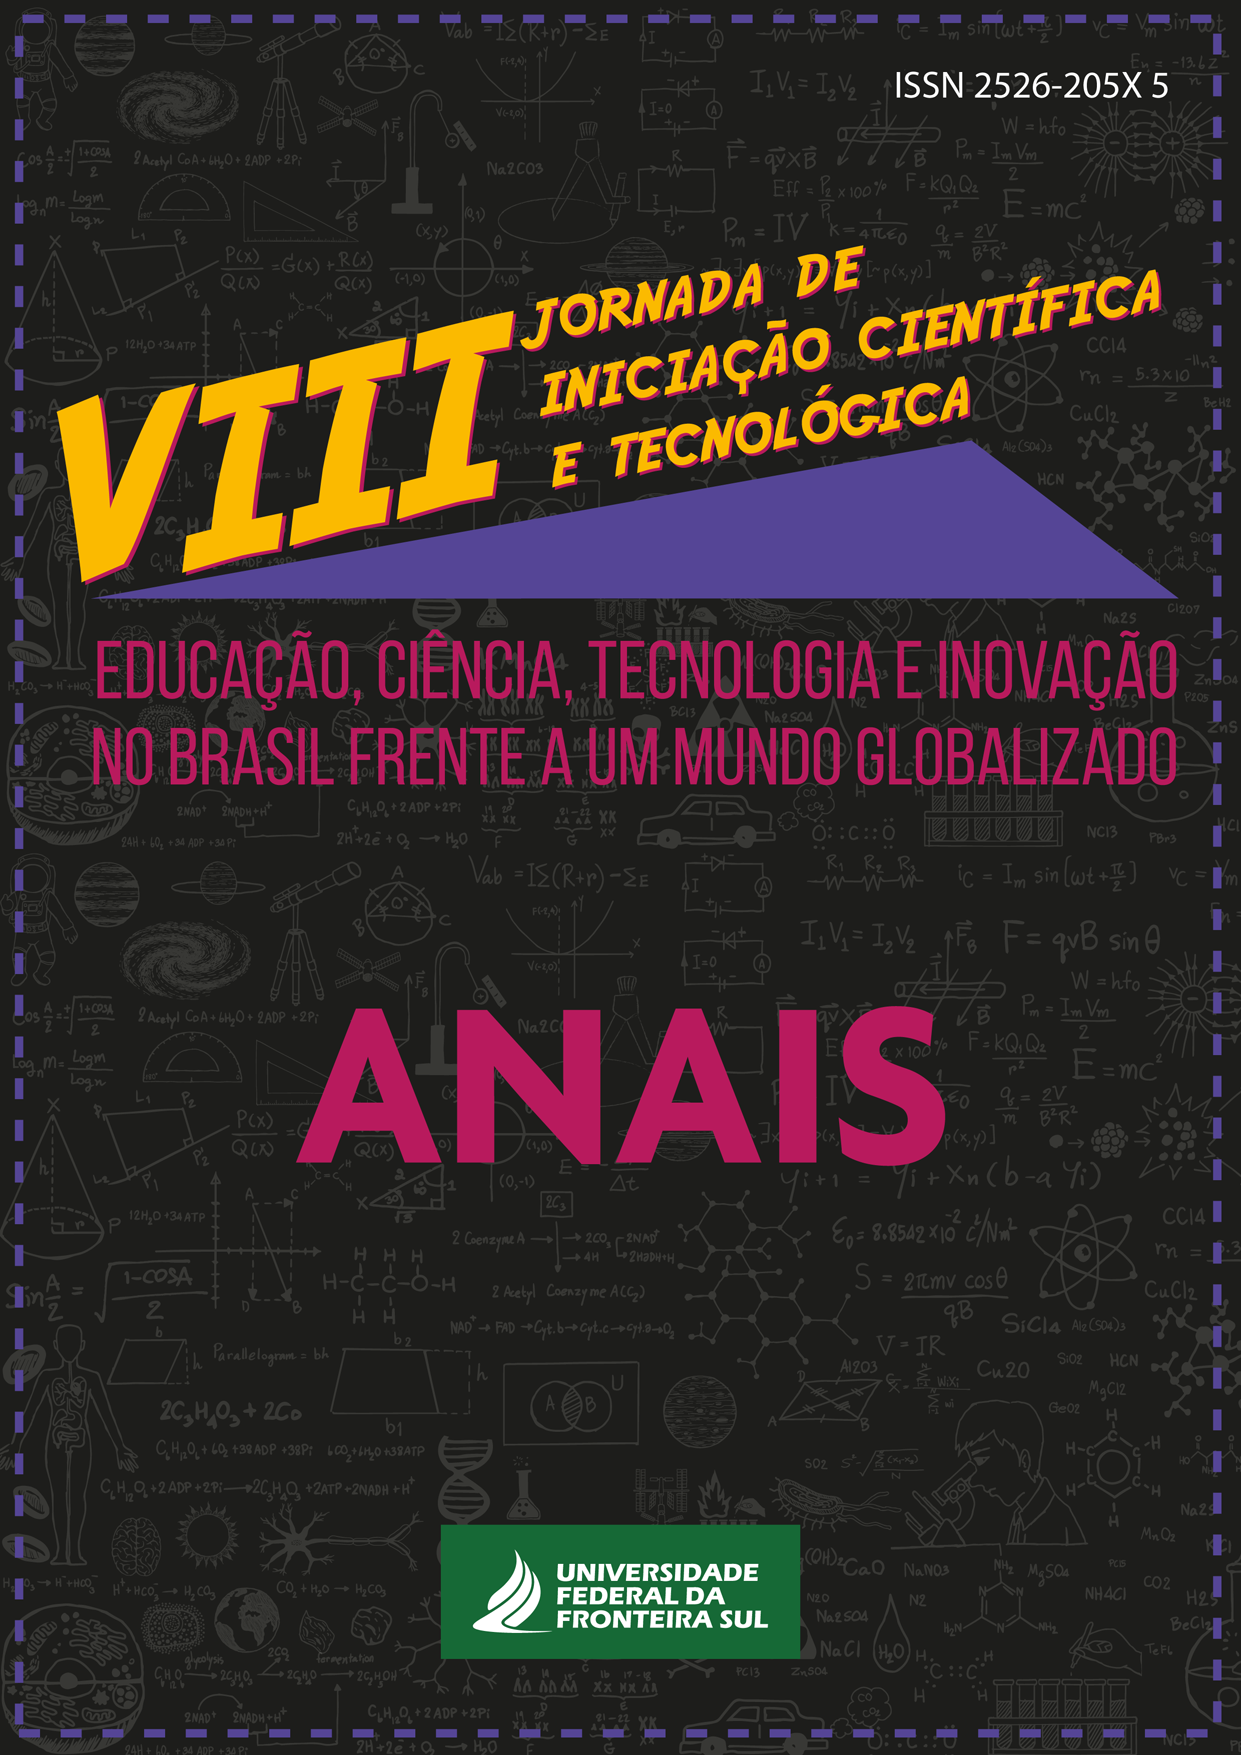 Capa com fundo preto, letras amarelas e cor de rosa, identificação da VIII Jornada de Iniciação Científica e Tecnológica da UFFS